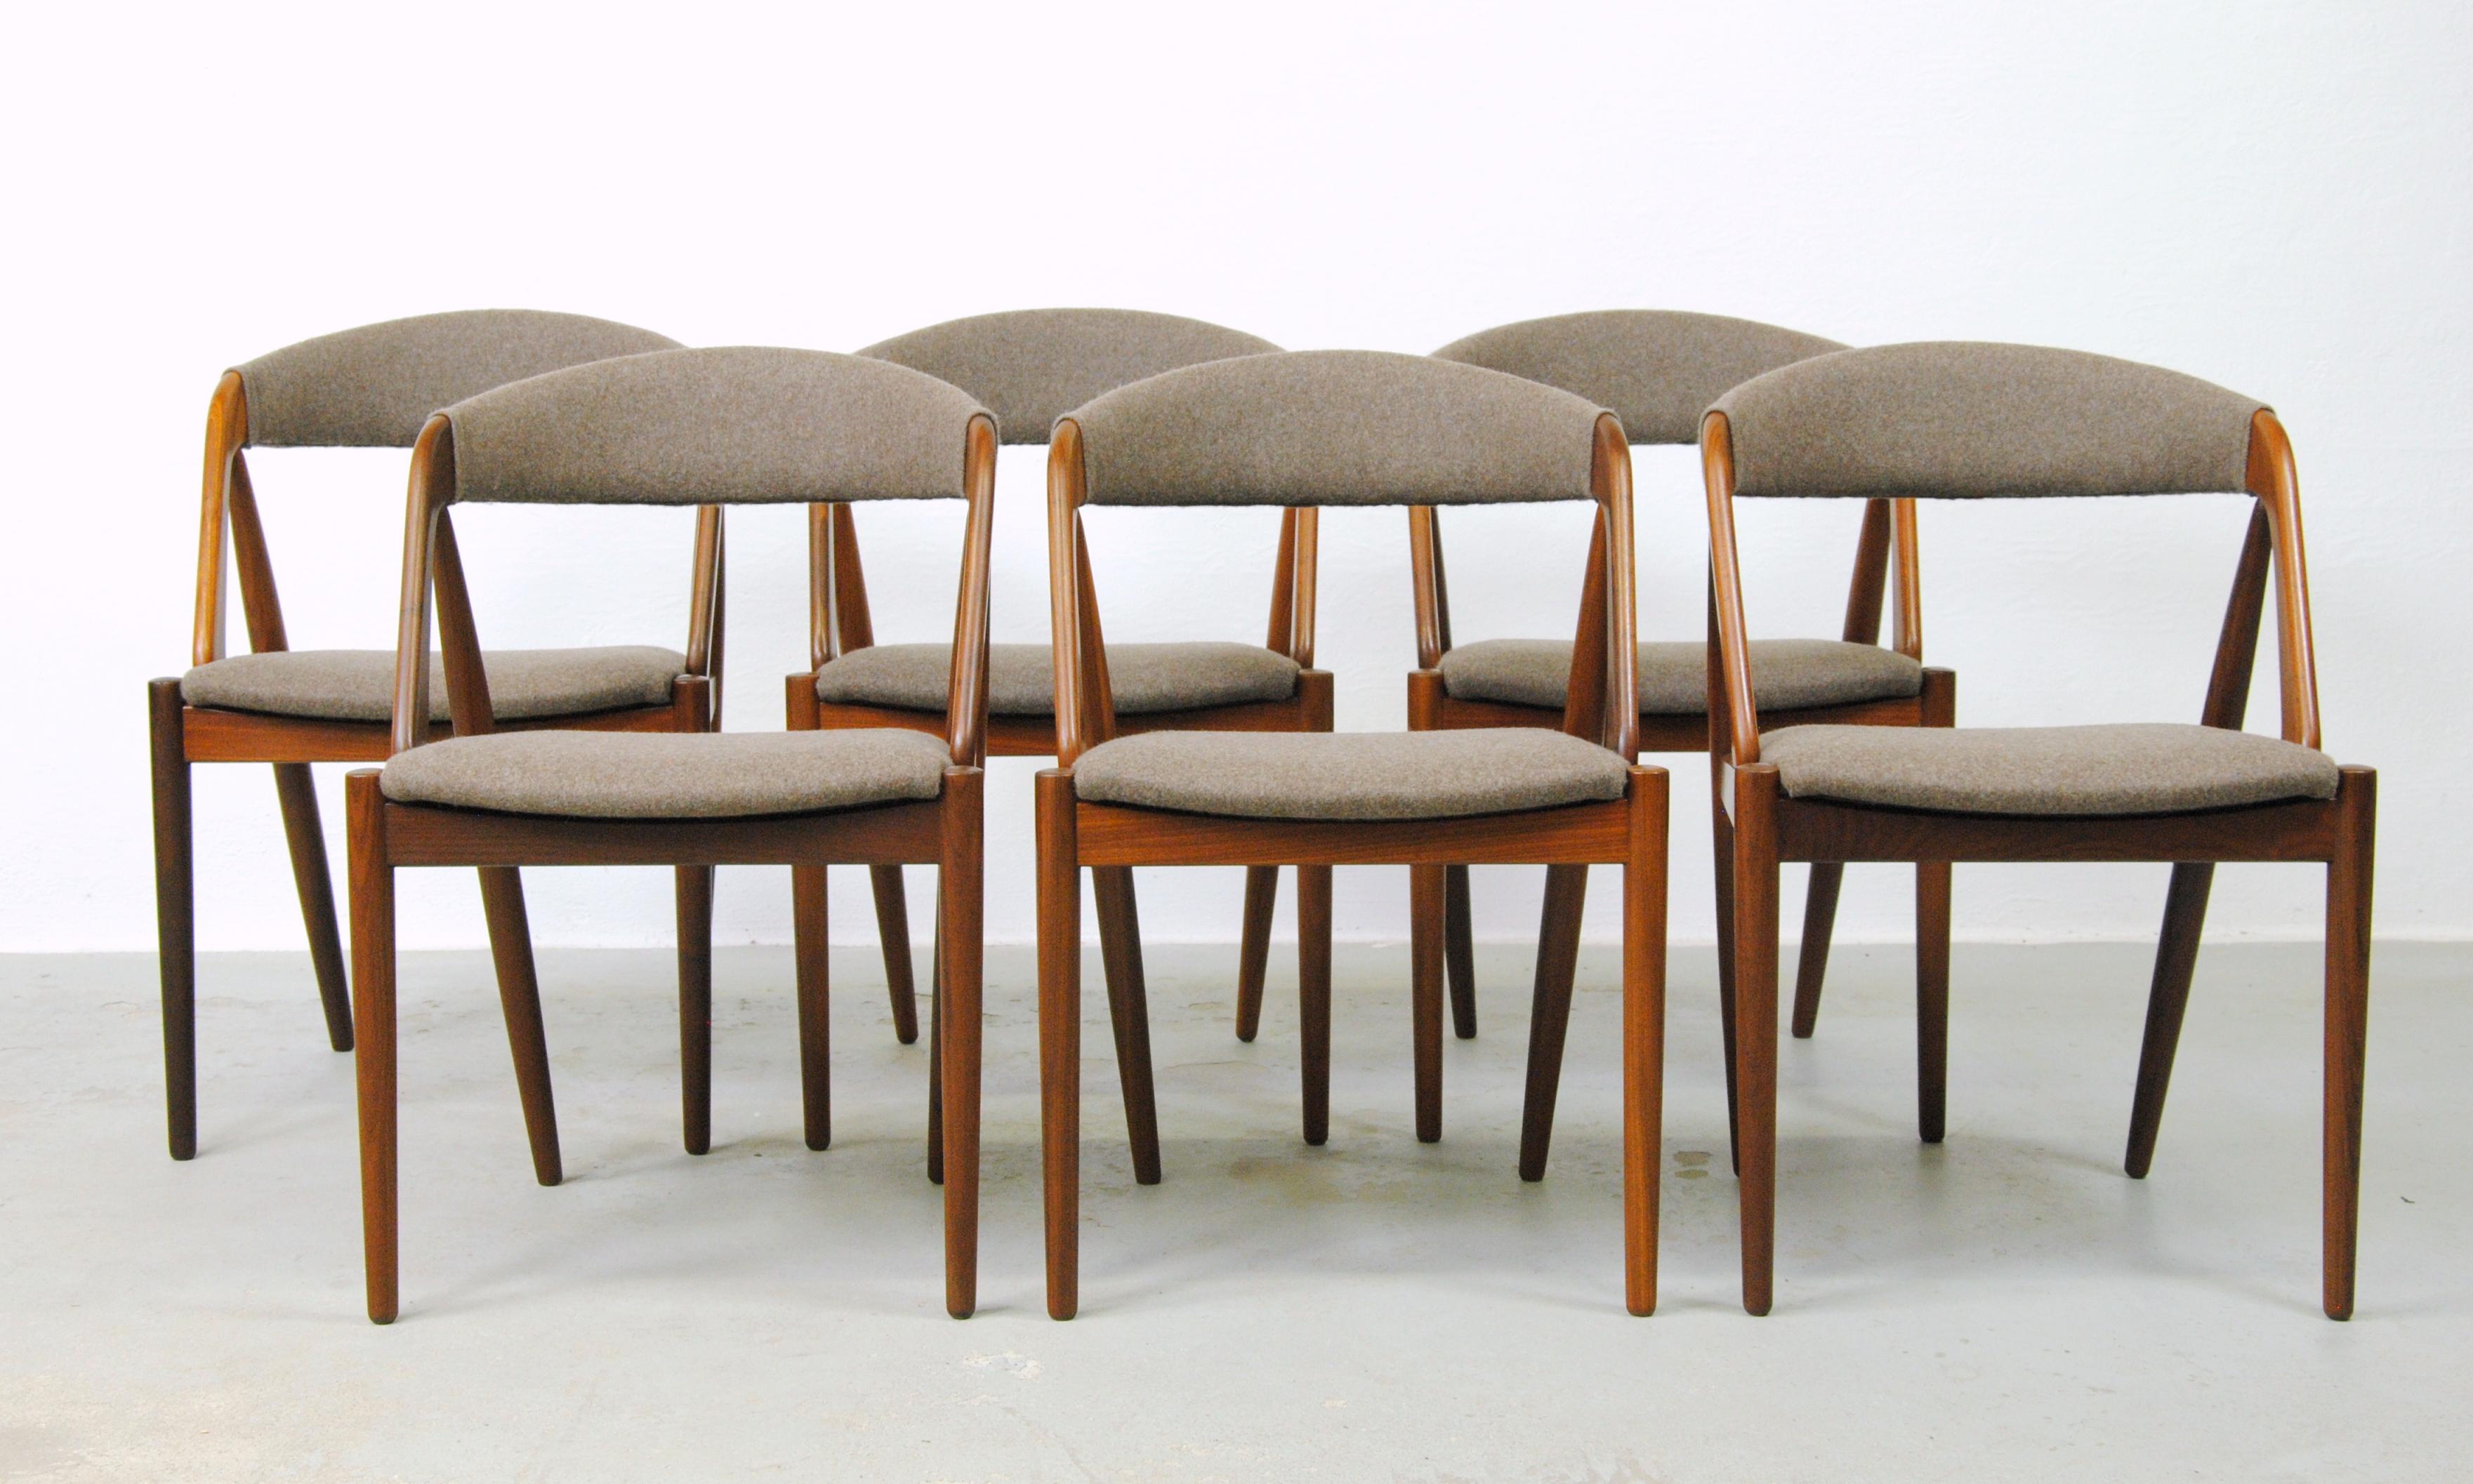 Kai Kristiansen ensemble de six chaises de salle à manger en teck entièrement restaurées par Schou Andersens Møbel Fabrikant, y compris le rembourrage sur mesure.

Les chaises de salle à manger A-frame modèle 31 ont été conçues par Kai Kristiansen